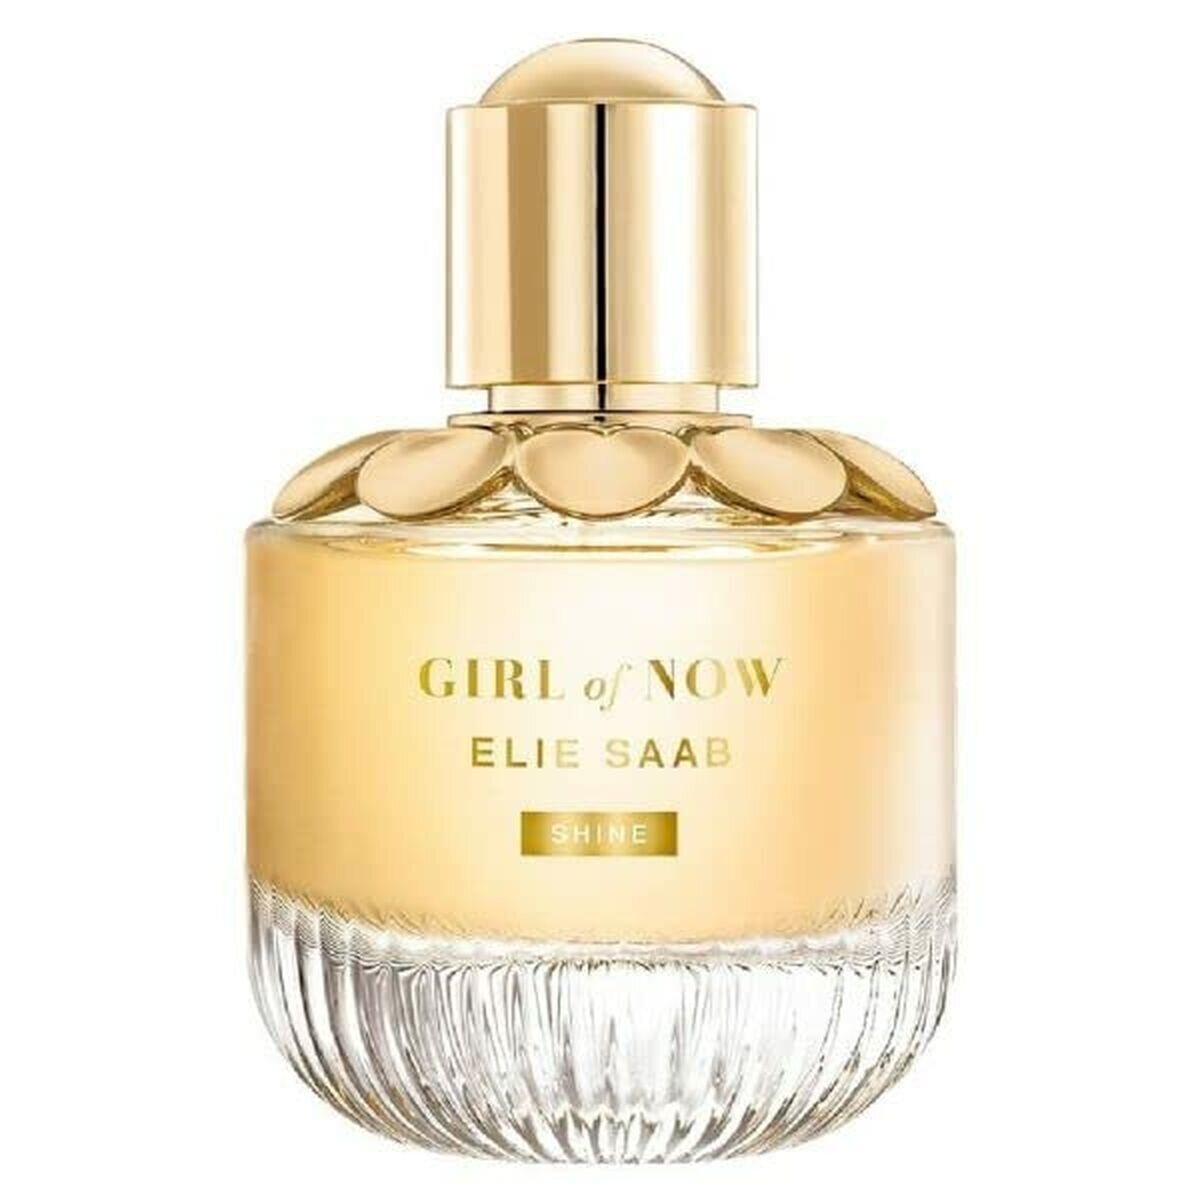 Elie Saab Girl Of Now Shine Eau De Parfum 50 ml